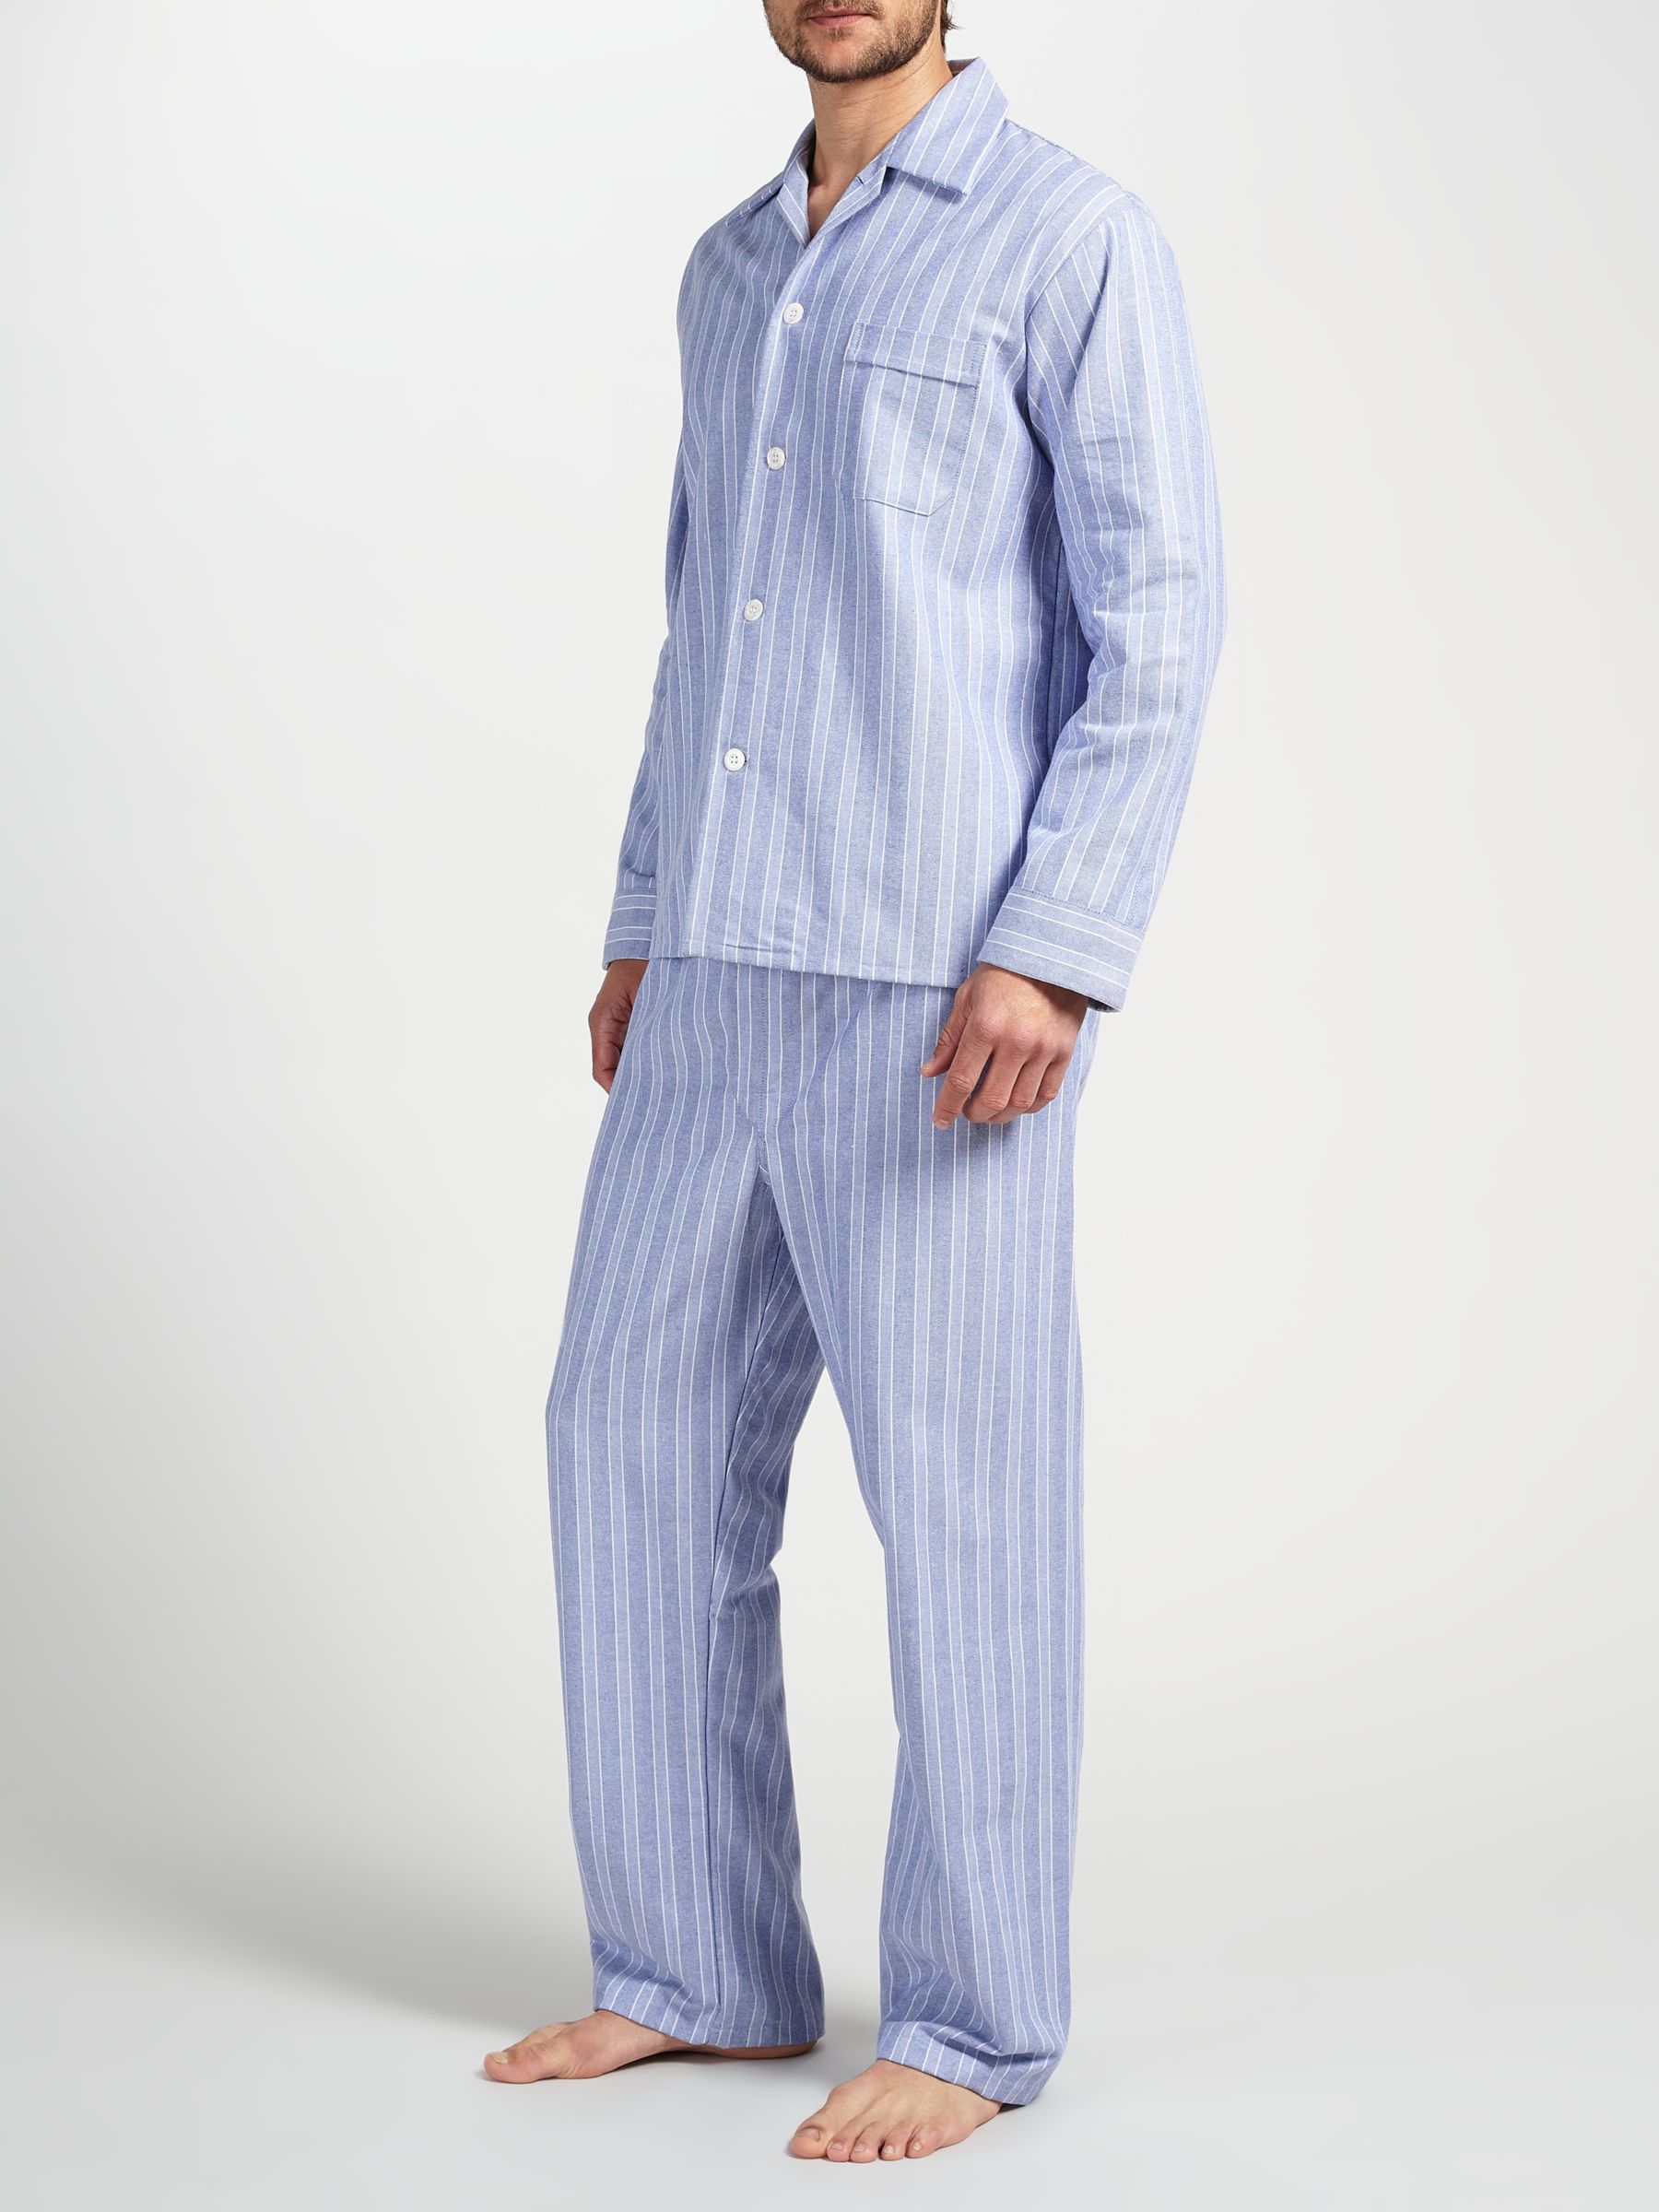 Derek Rose Brushed Cotton Stripe Pyjamas, White/Blue at John Lewis ...